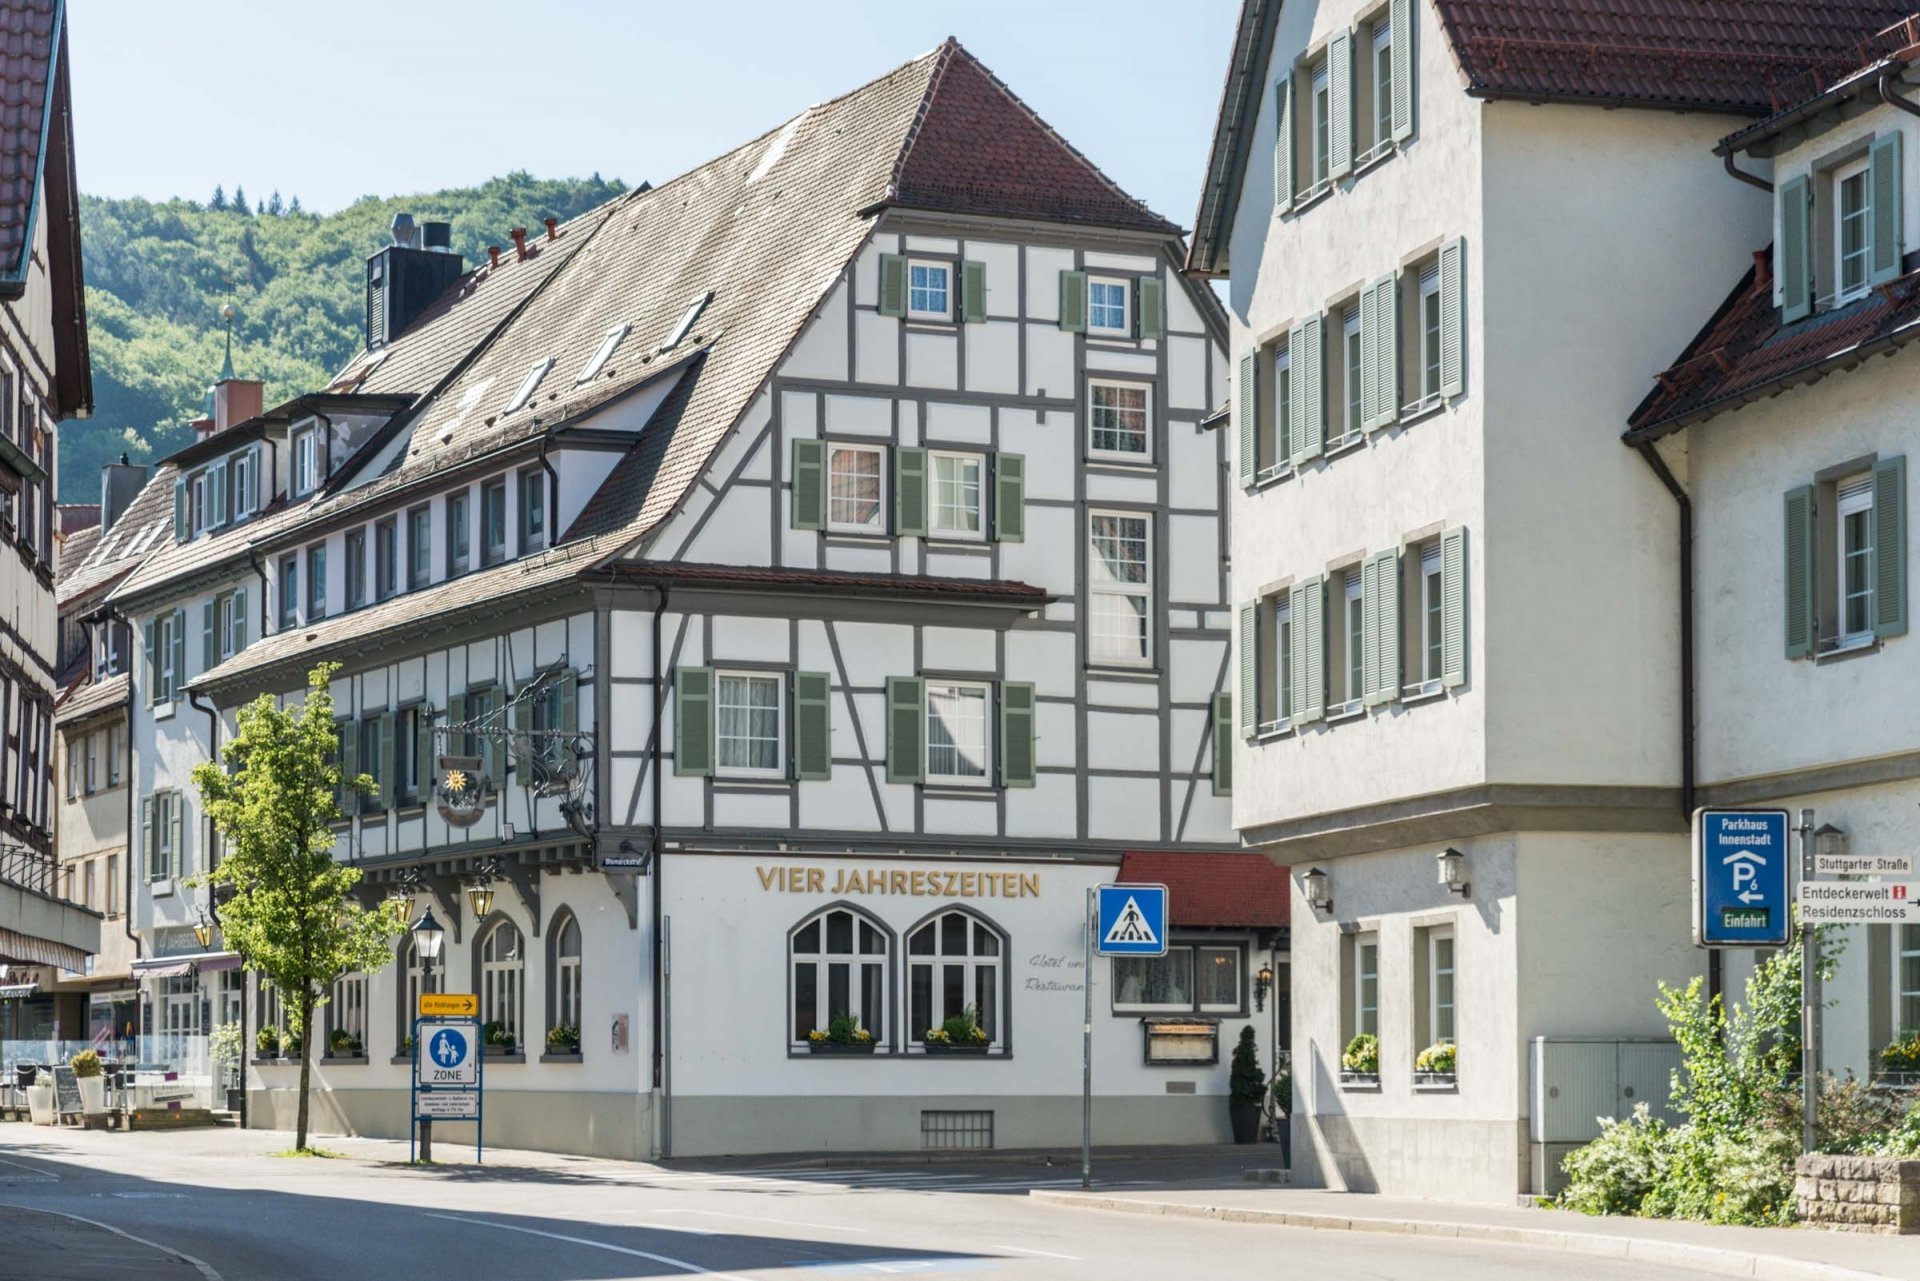 5 Tage/ 4 Nächte Urlaub im Biosphärengebiet Schwäbische Alb – Flair Hotel Vier Jahreszeiten (3.5 Sterne) in Bad Urach, Baden-Württemberg inkl. Halbpension